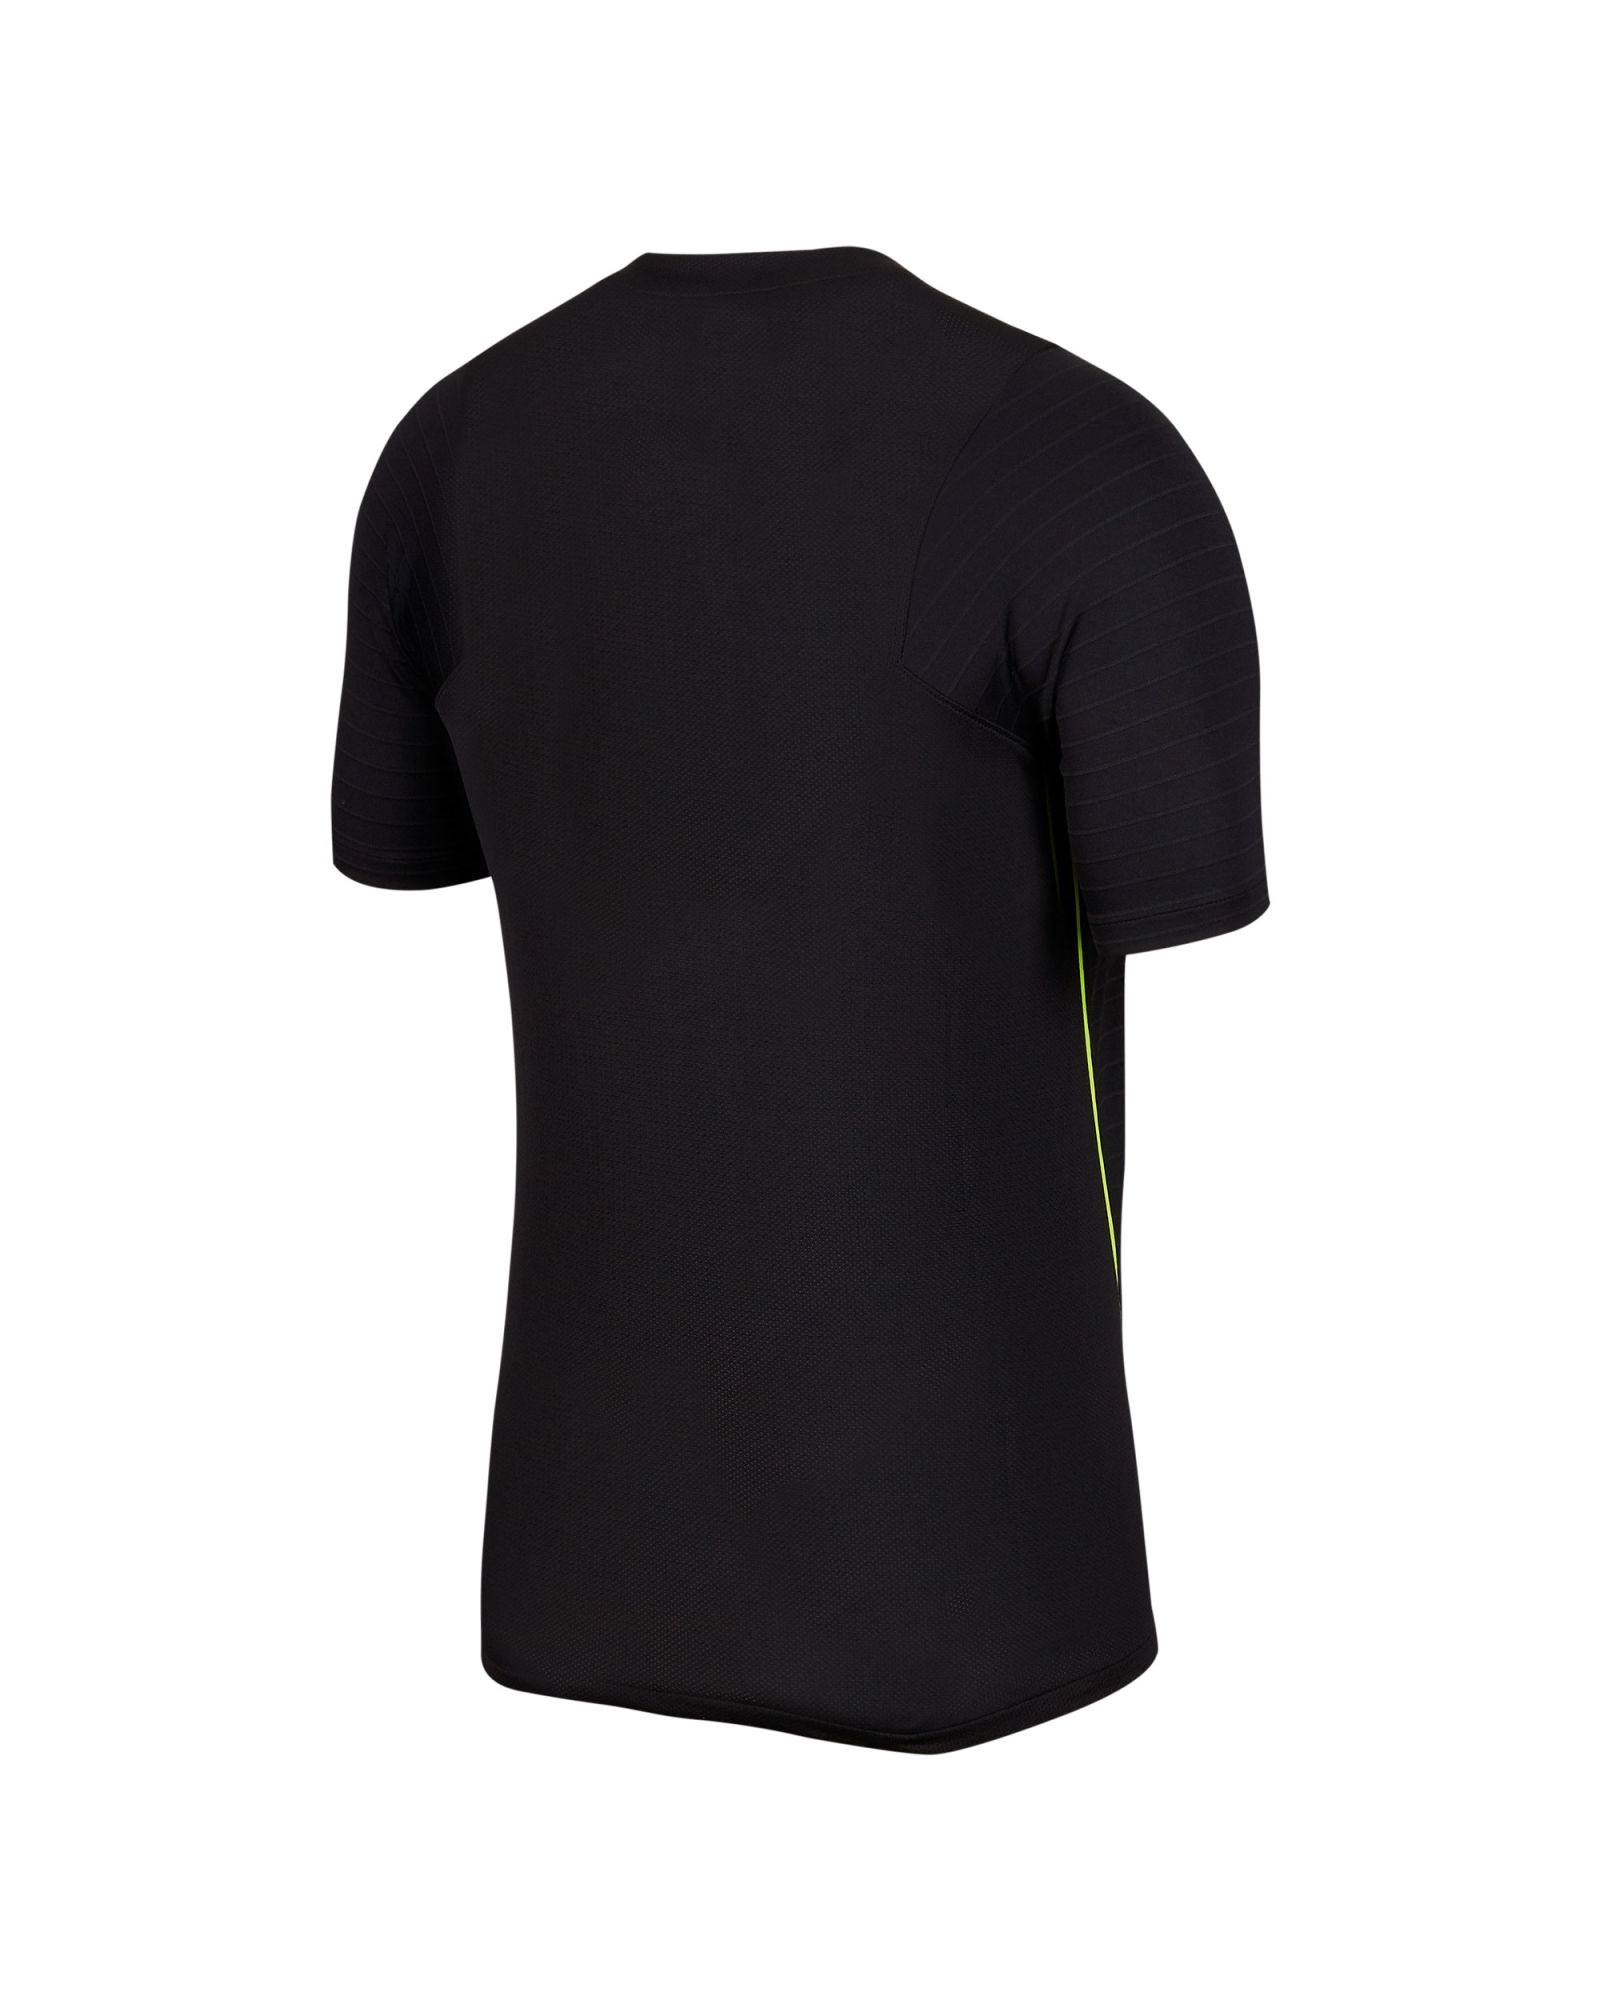 Camiseta de Training Mercurial Strike Negro - Fútbol Factory